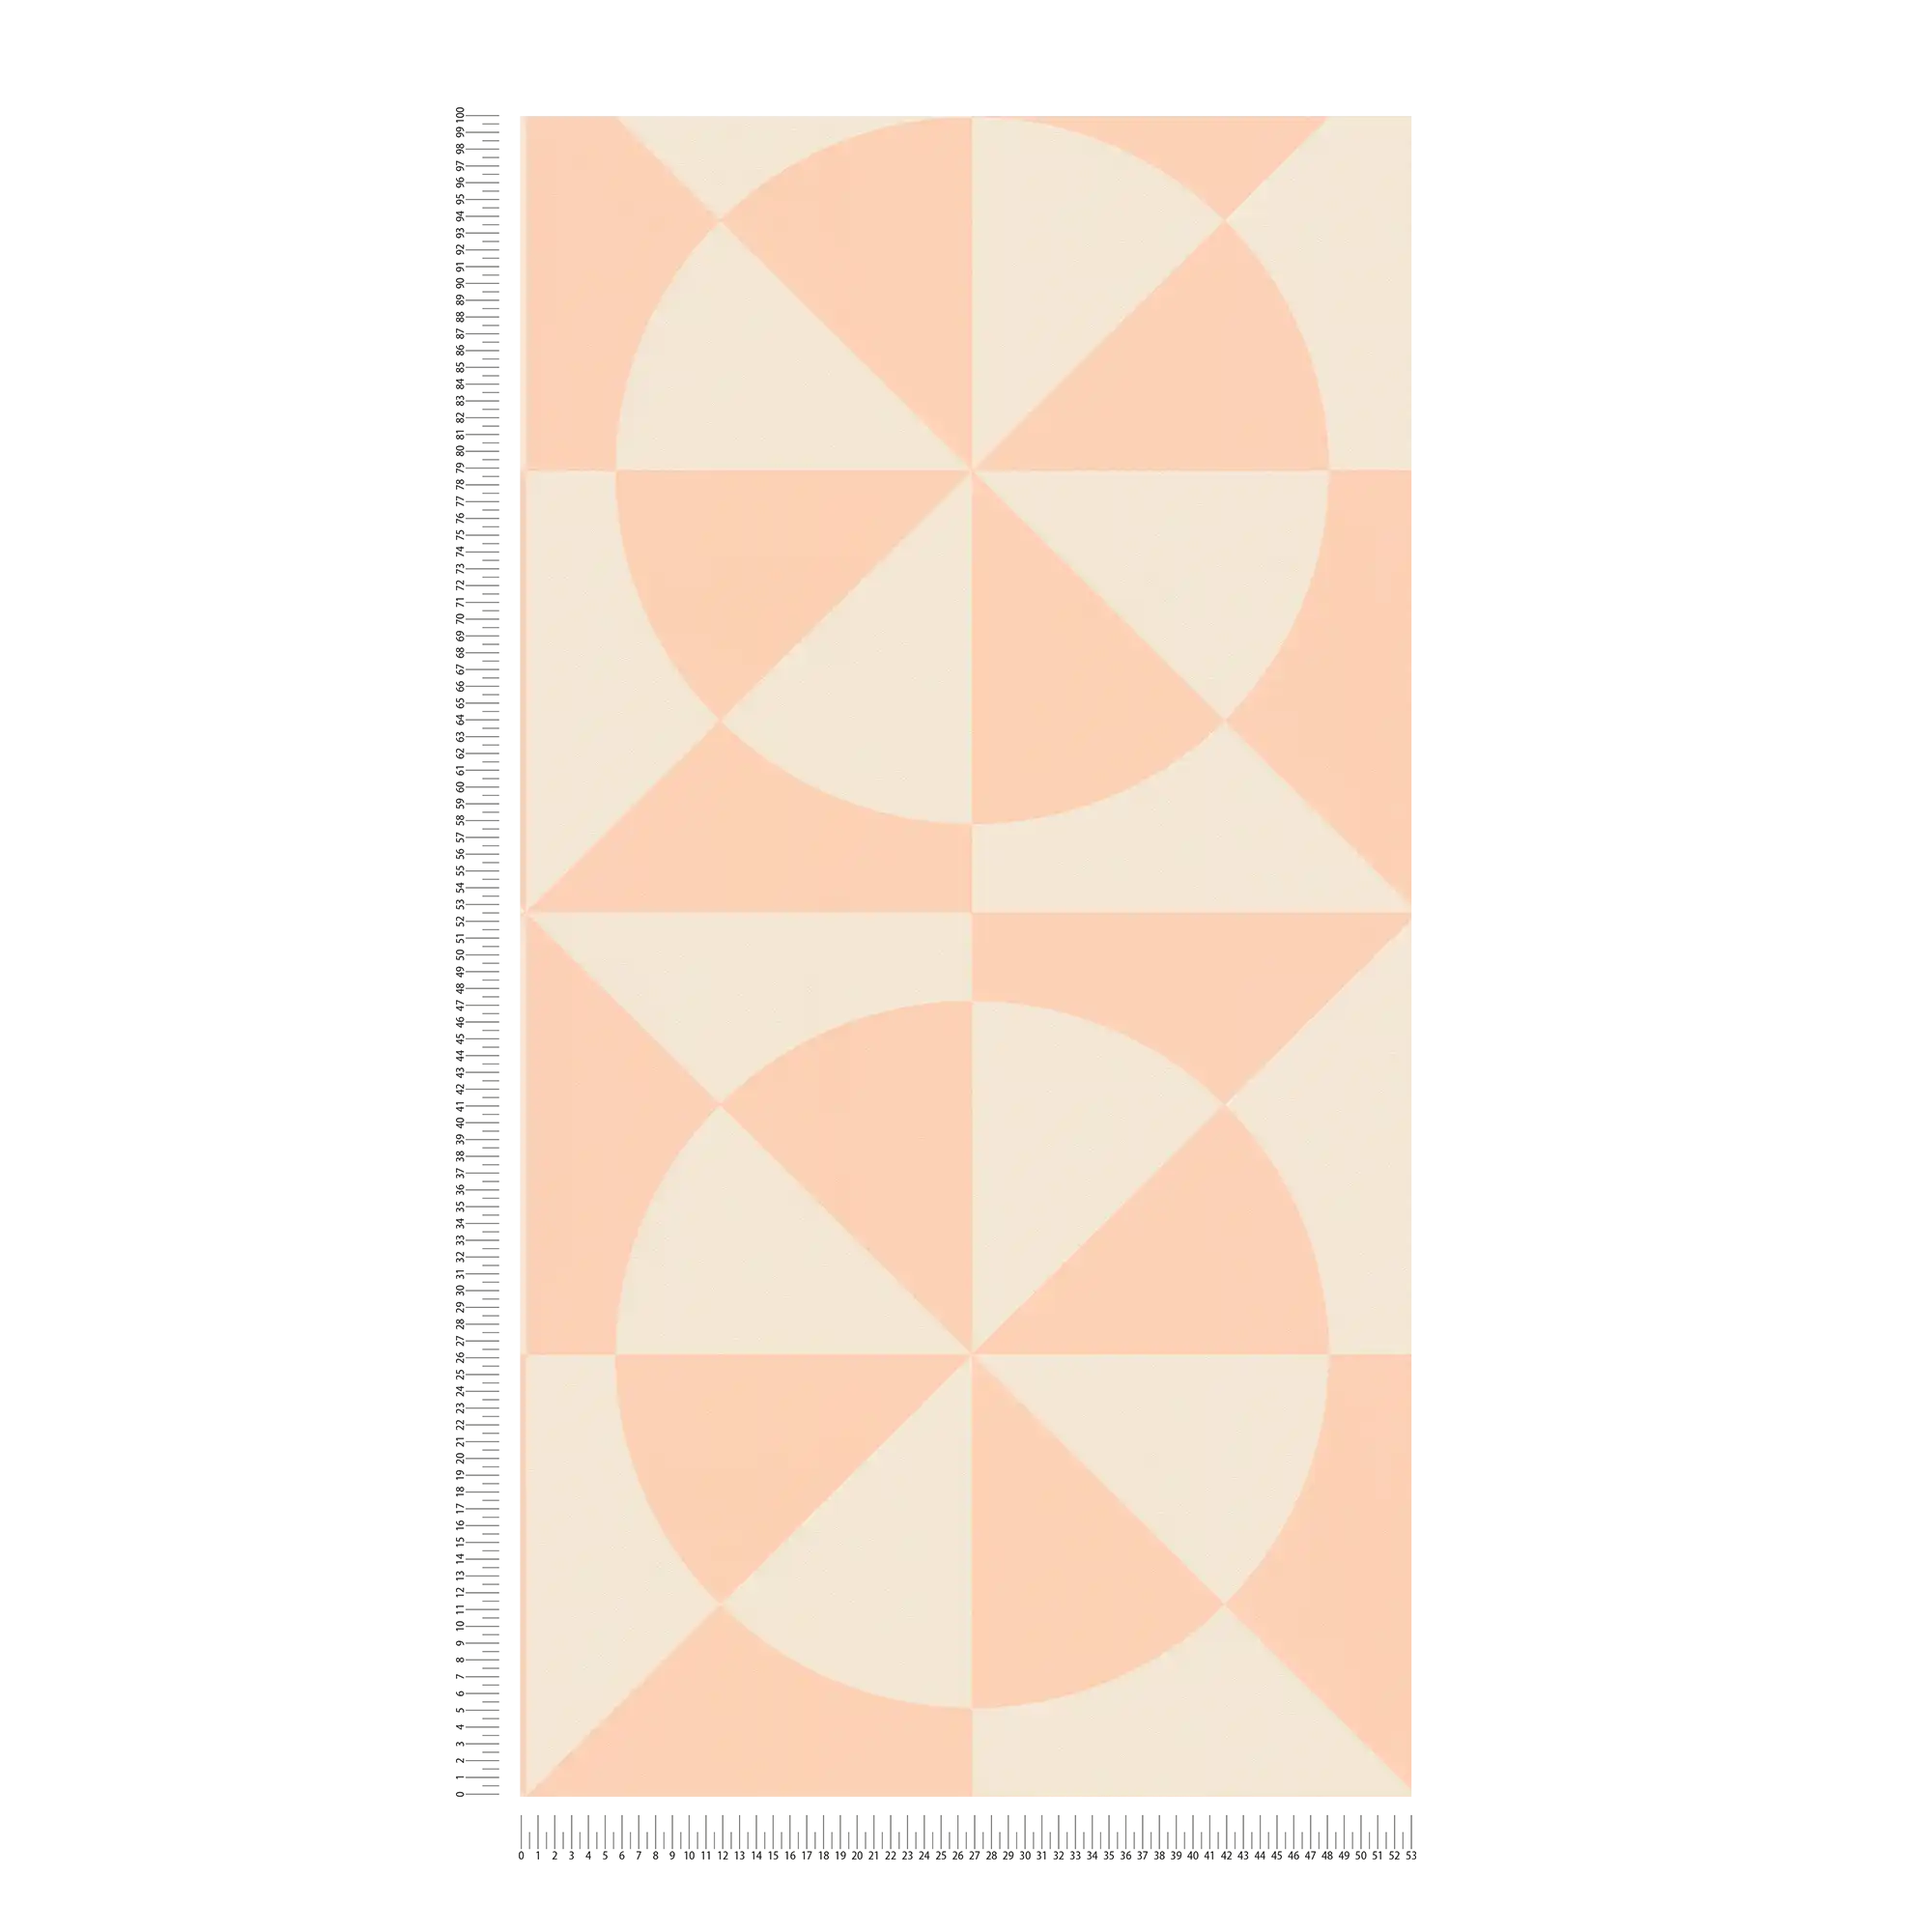             Carta da parati grafica in tessuto non tessuto con triangoli e cerchi - crema, rosa
        